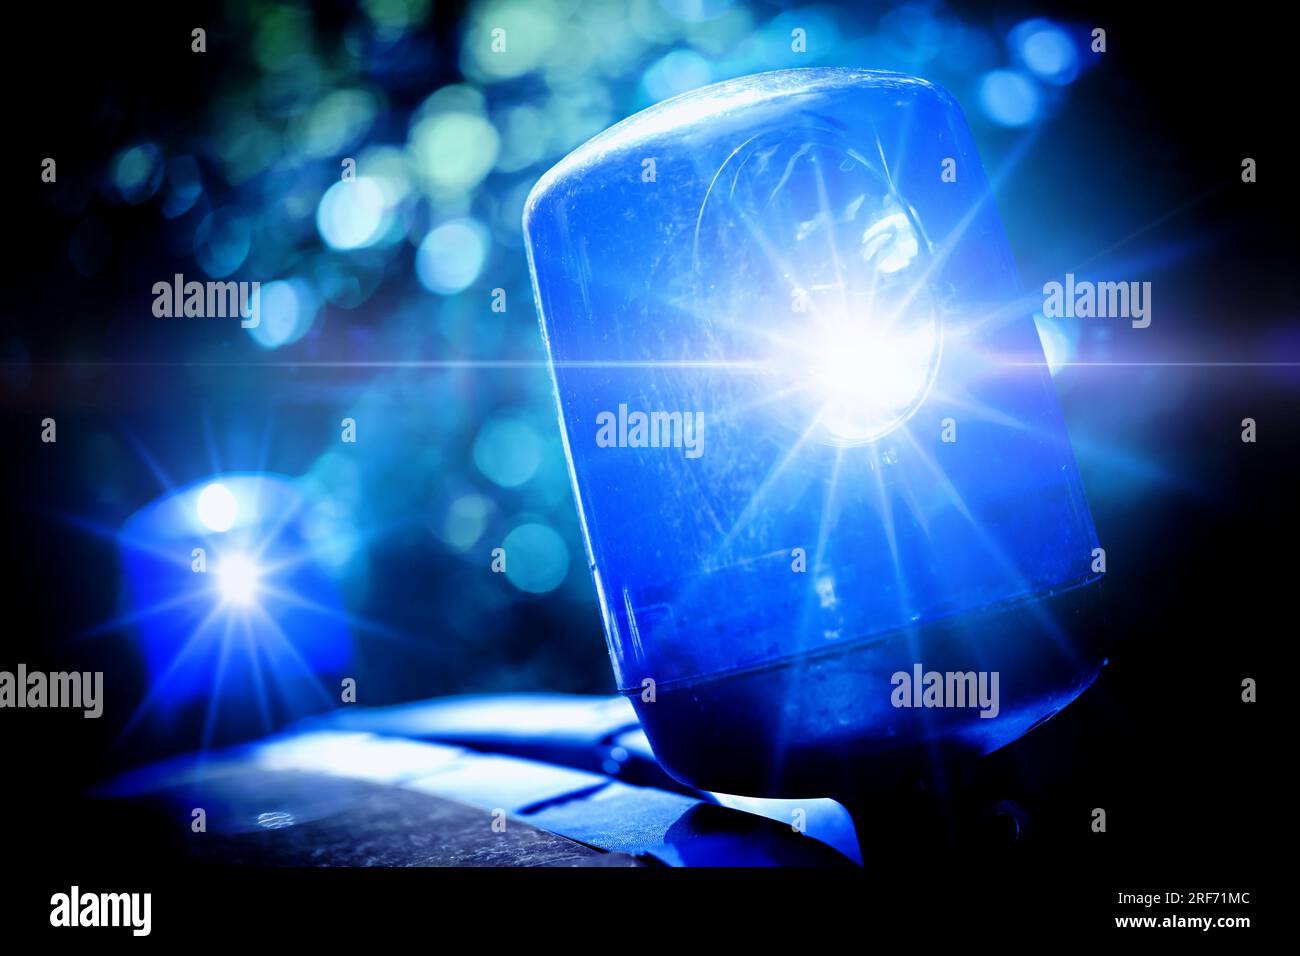 FOTOMONTAGE, Polizei mit Blaulicht, Symbolfoto Polizeieinsatz Foto Stock